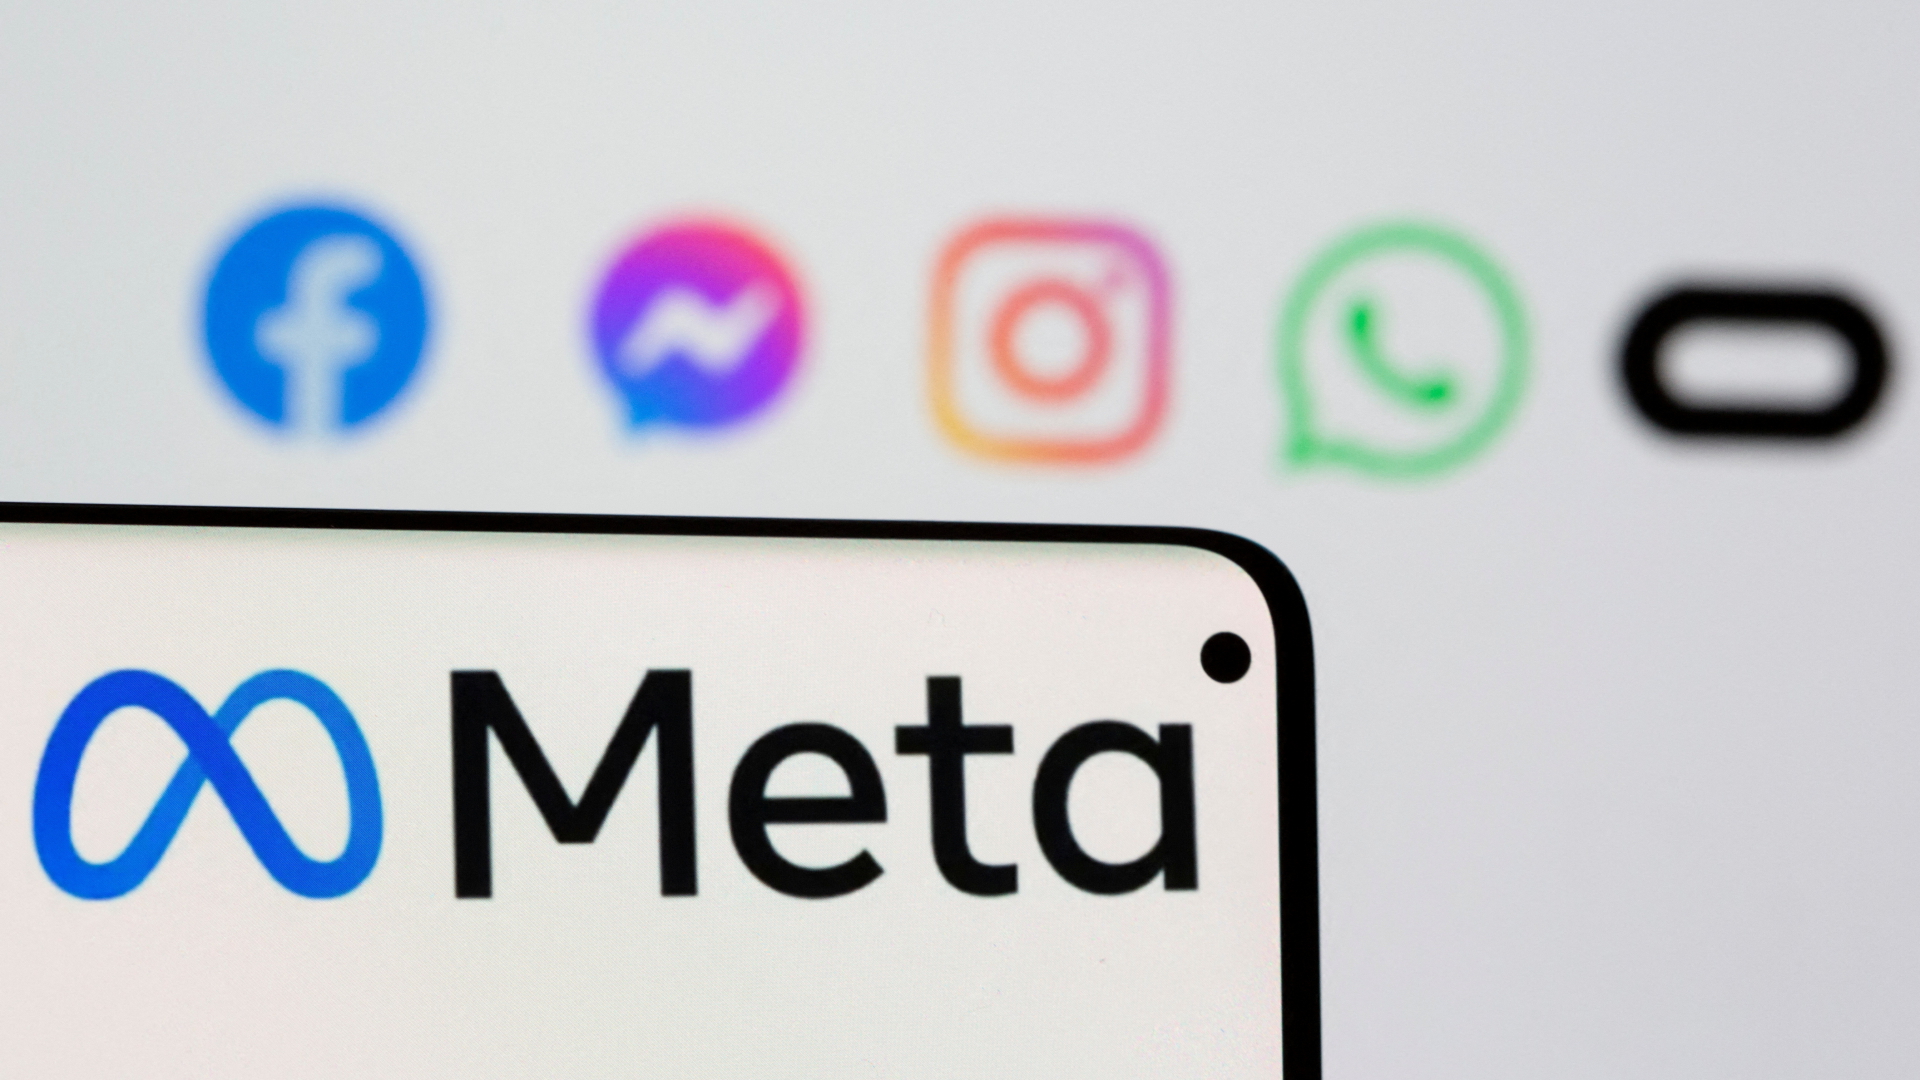 Hukum media AS yang diusulkan: Meta mengancam untuk memboikot berita